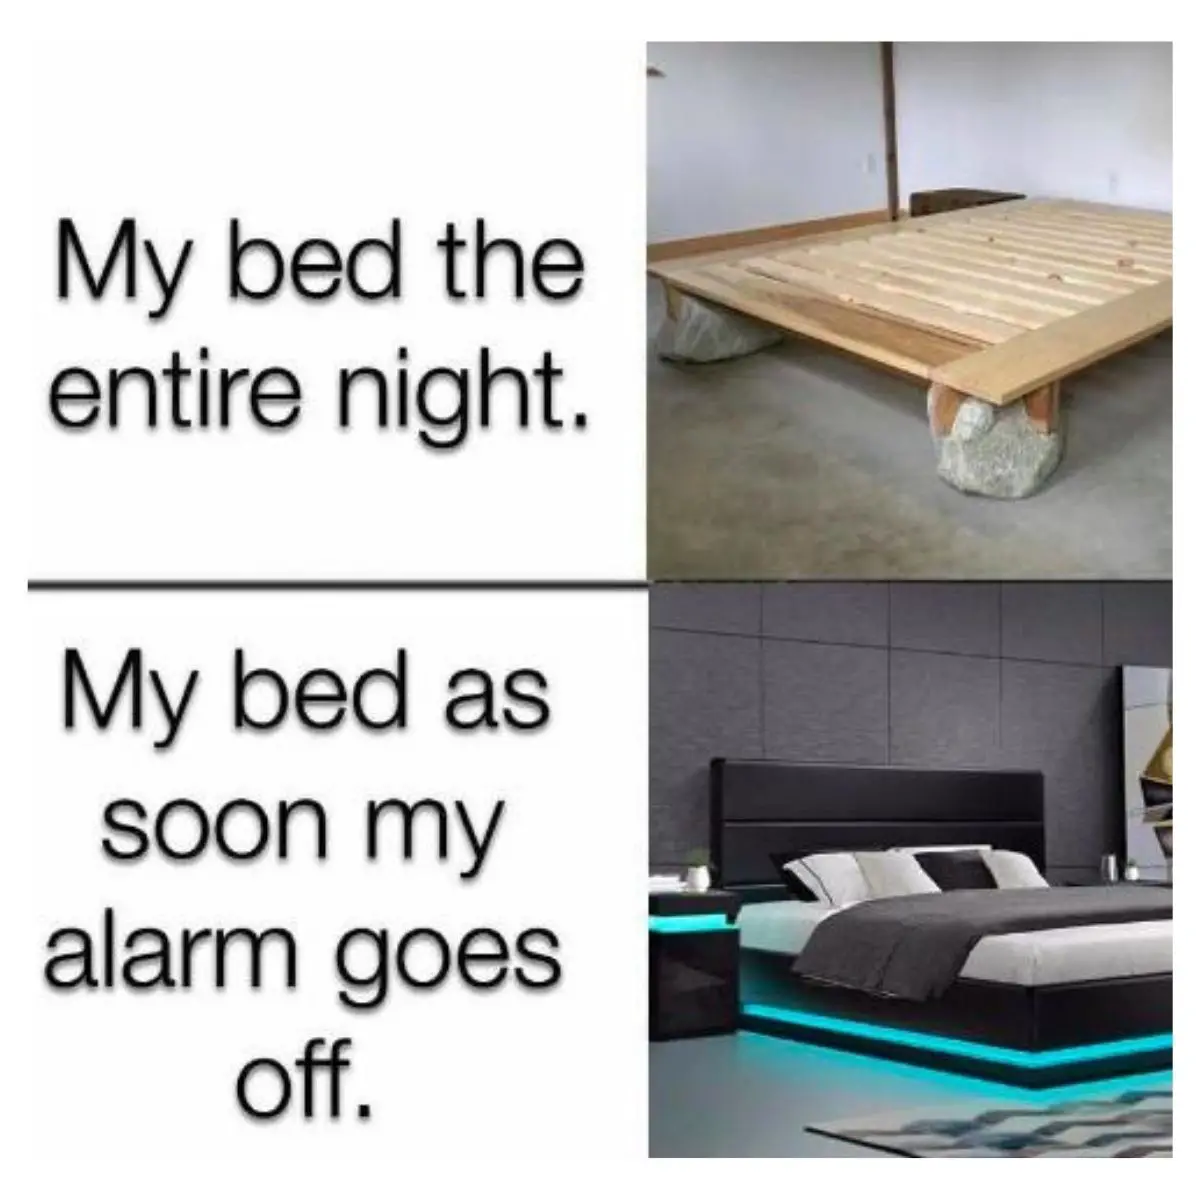 Comfort meme on bed